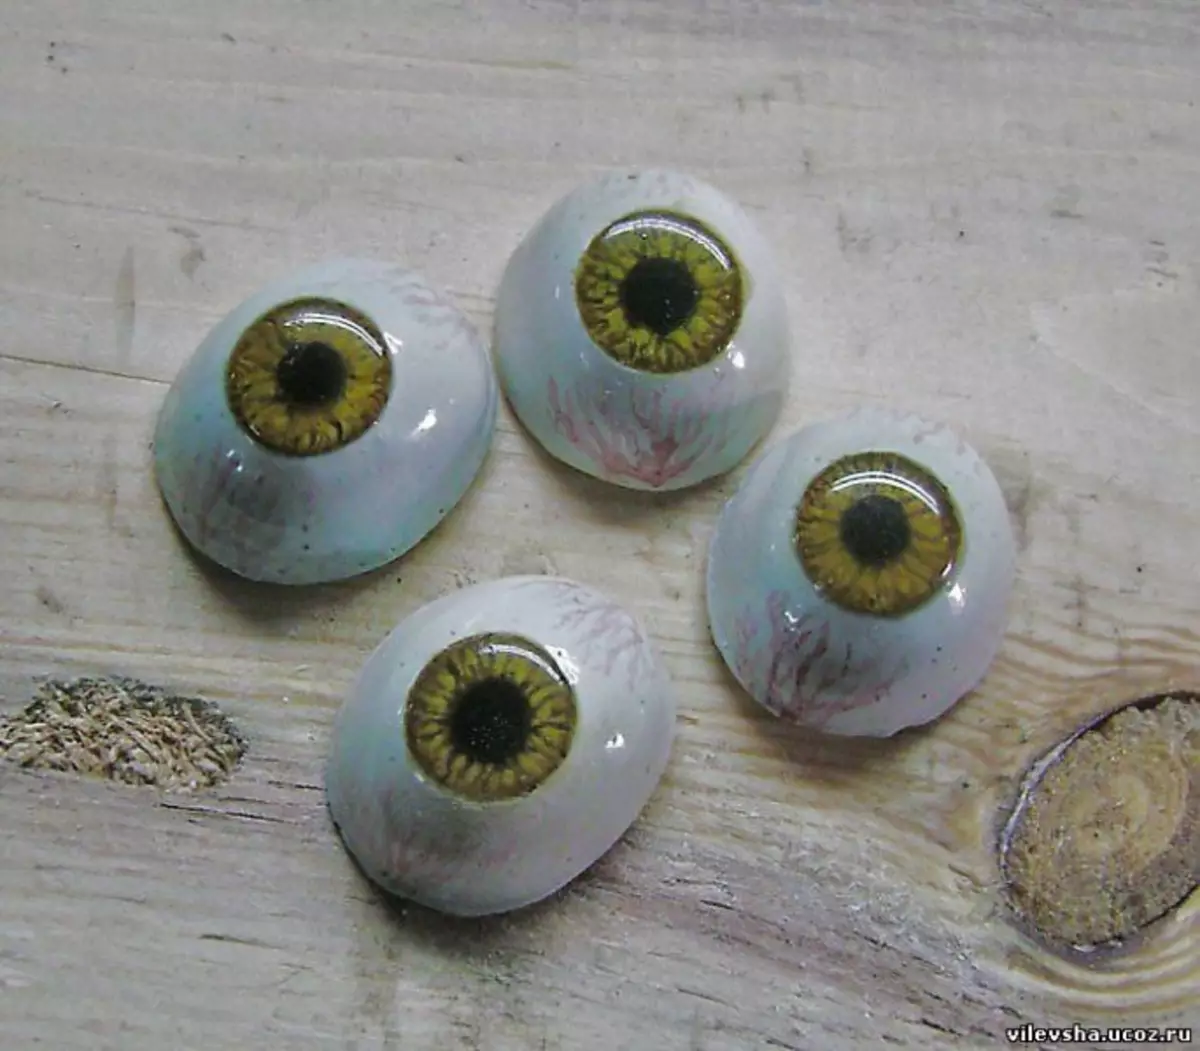 Ochii pentru jucării de la simțit cu propriile mâini pe o clasă de masterat